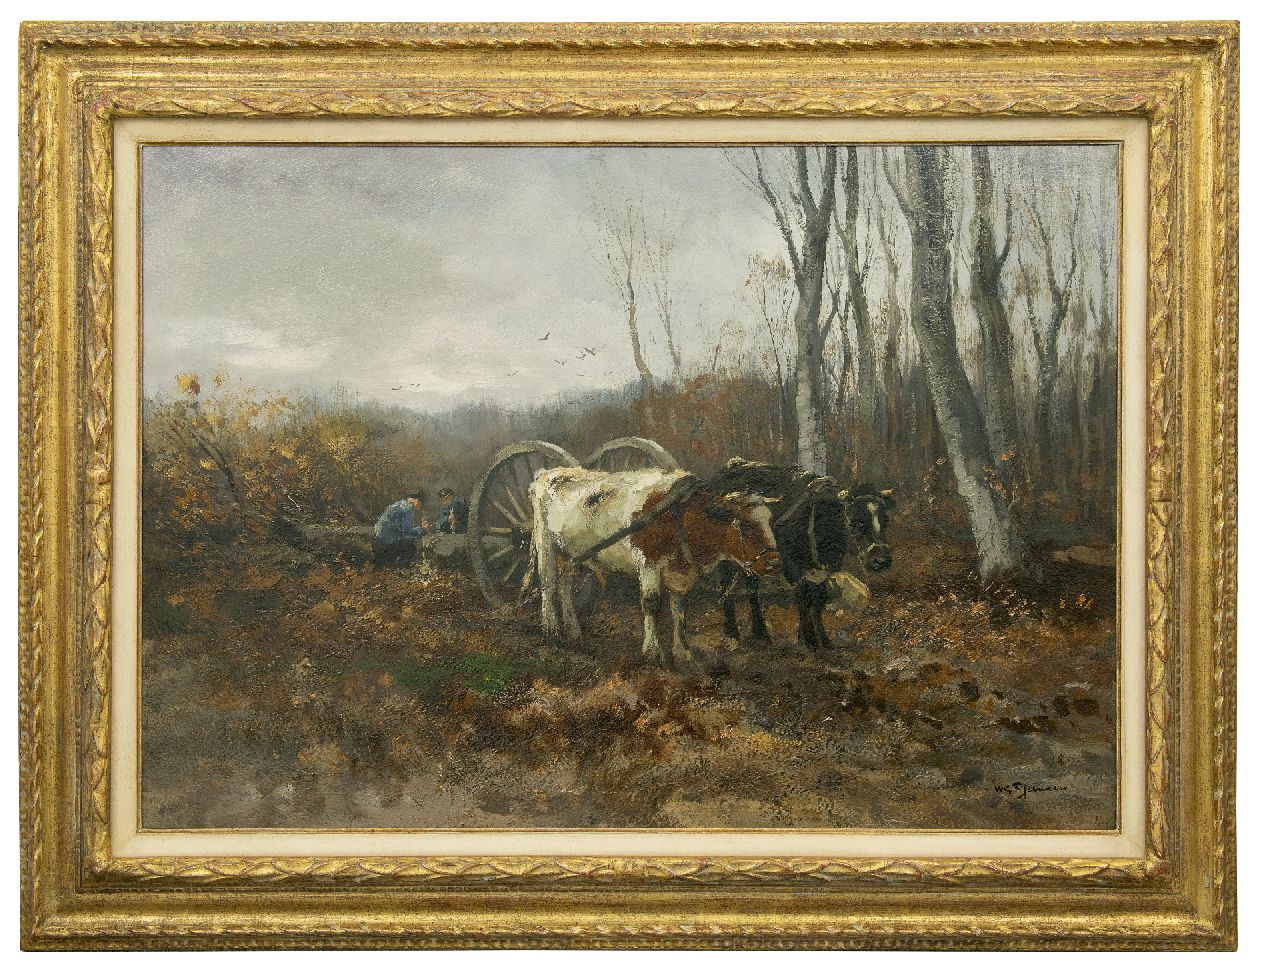 Jansen W.G.F.  | 'Willem' George Frederik Jansen, Ossen voor een mallejan, olieverf op doek 71,2 x 101,2 cm, gesigneerd rechtsonder